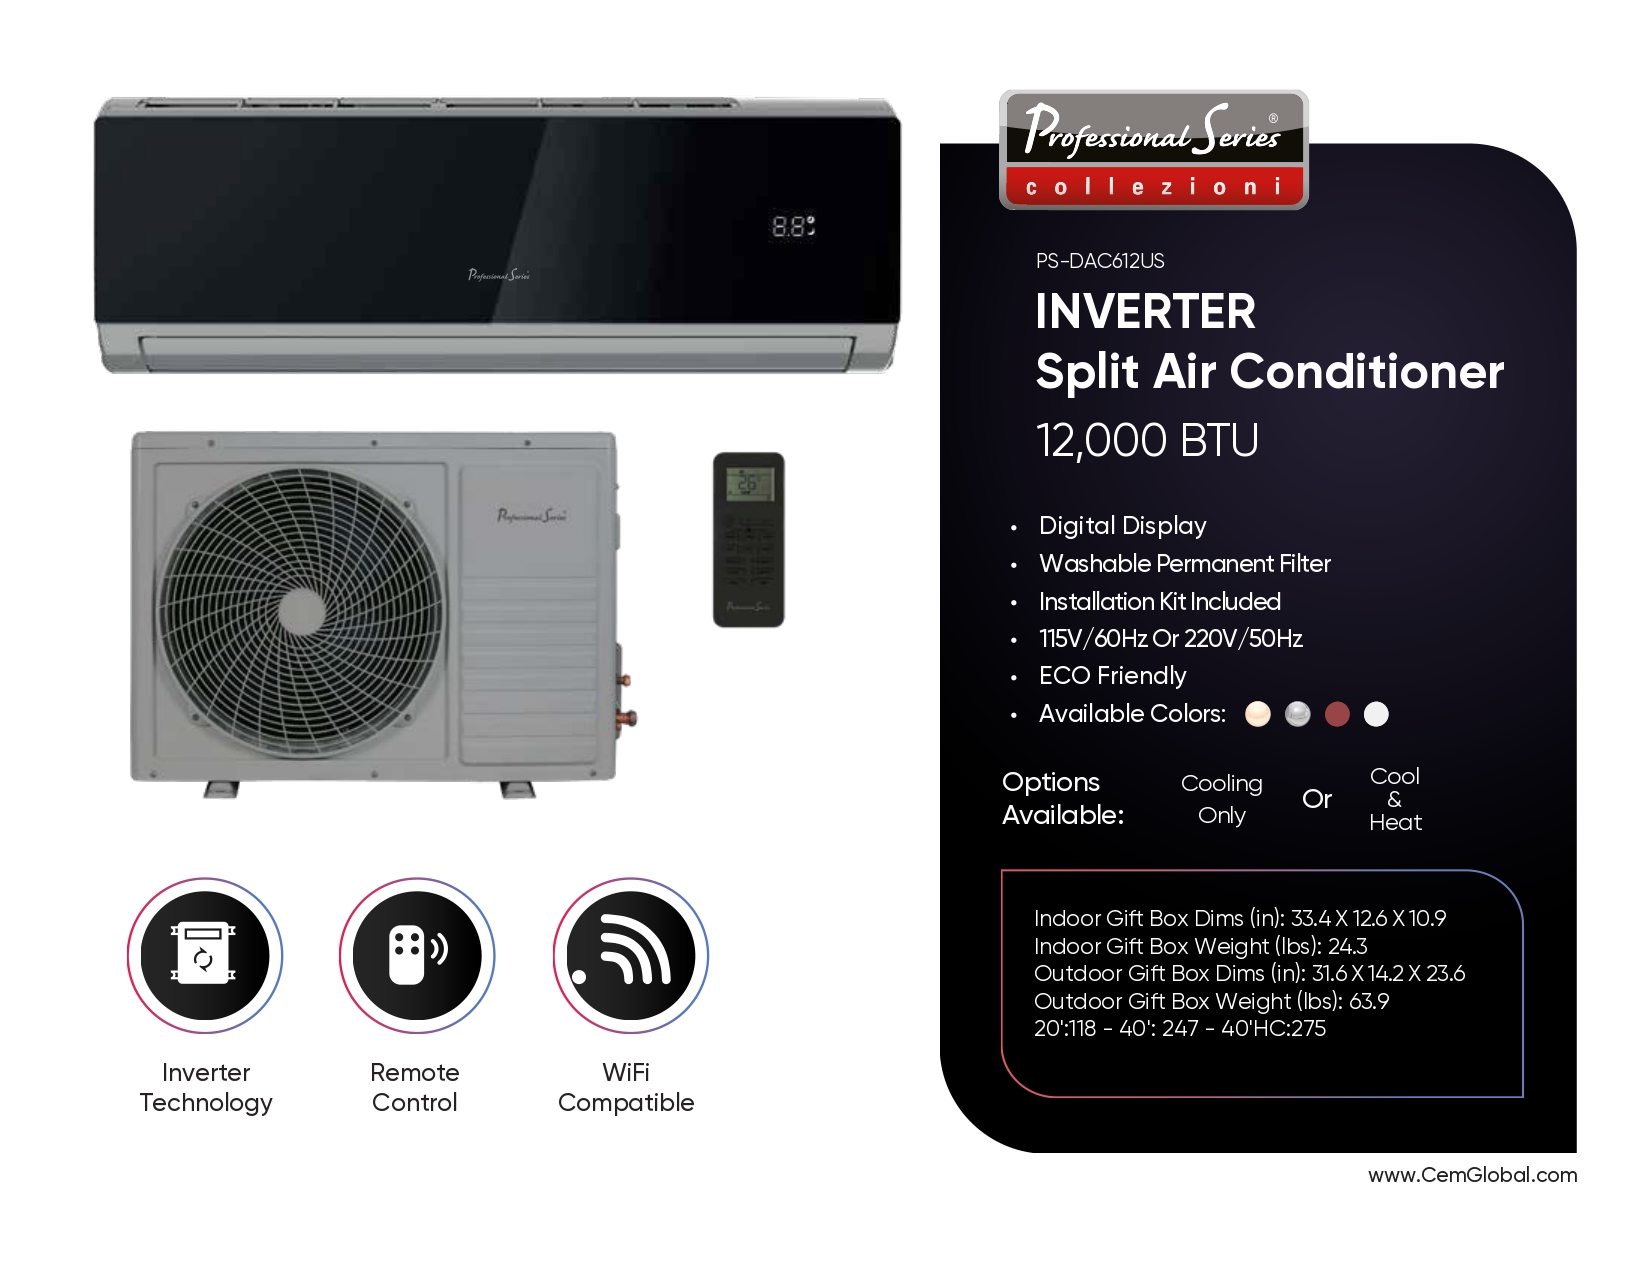 INVERTER Split Air Conditioner 12,000 BTU